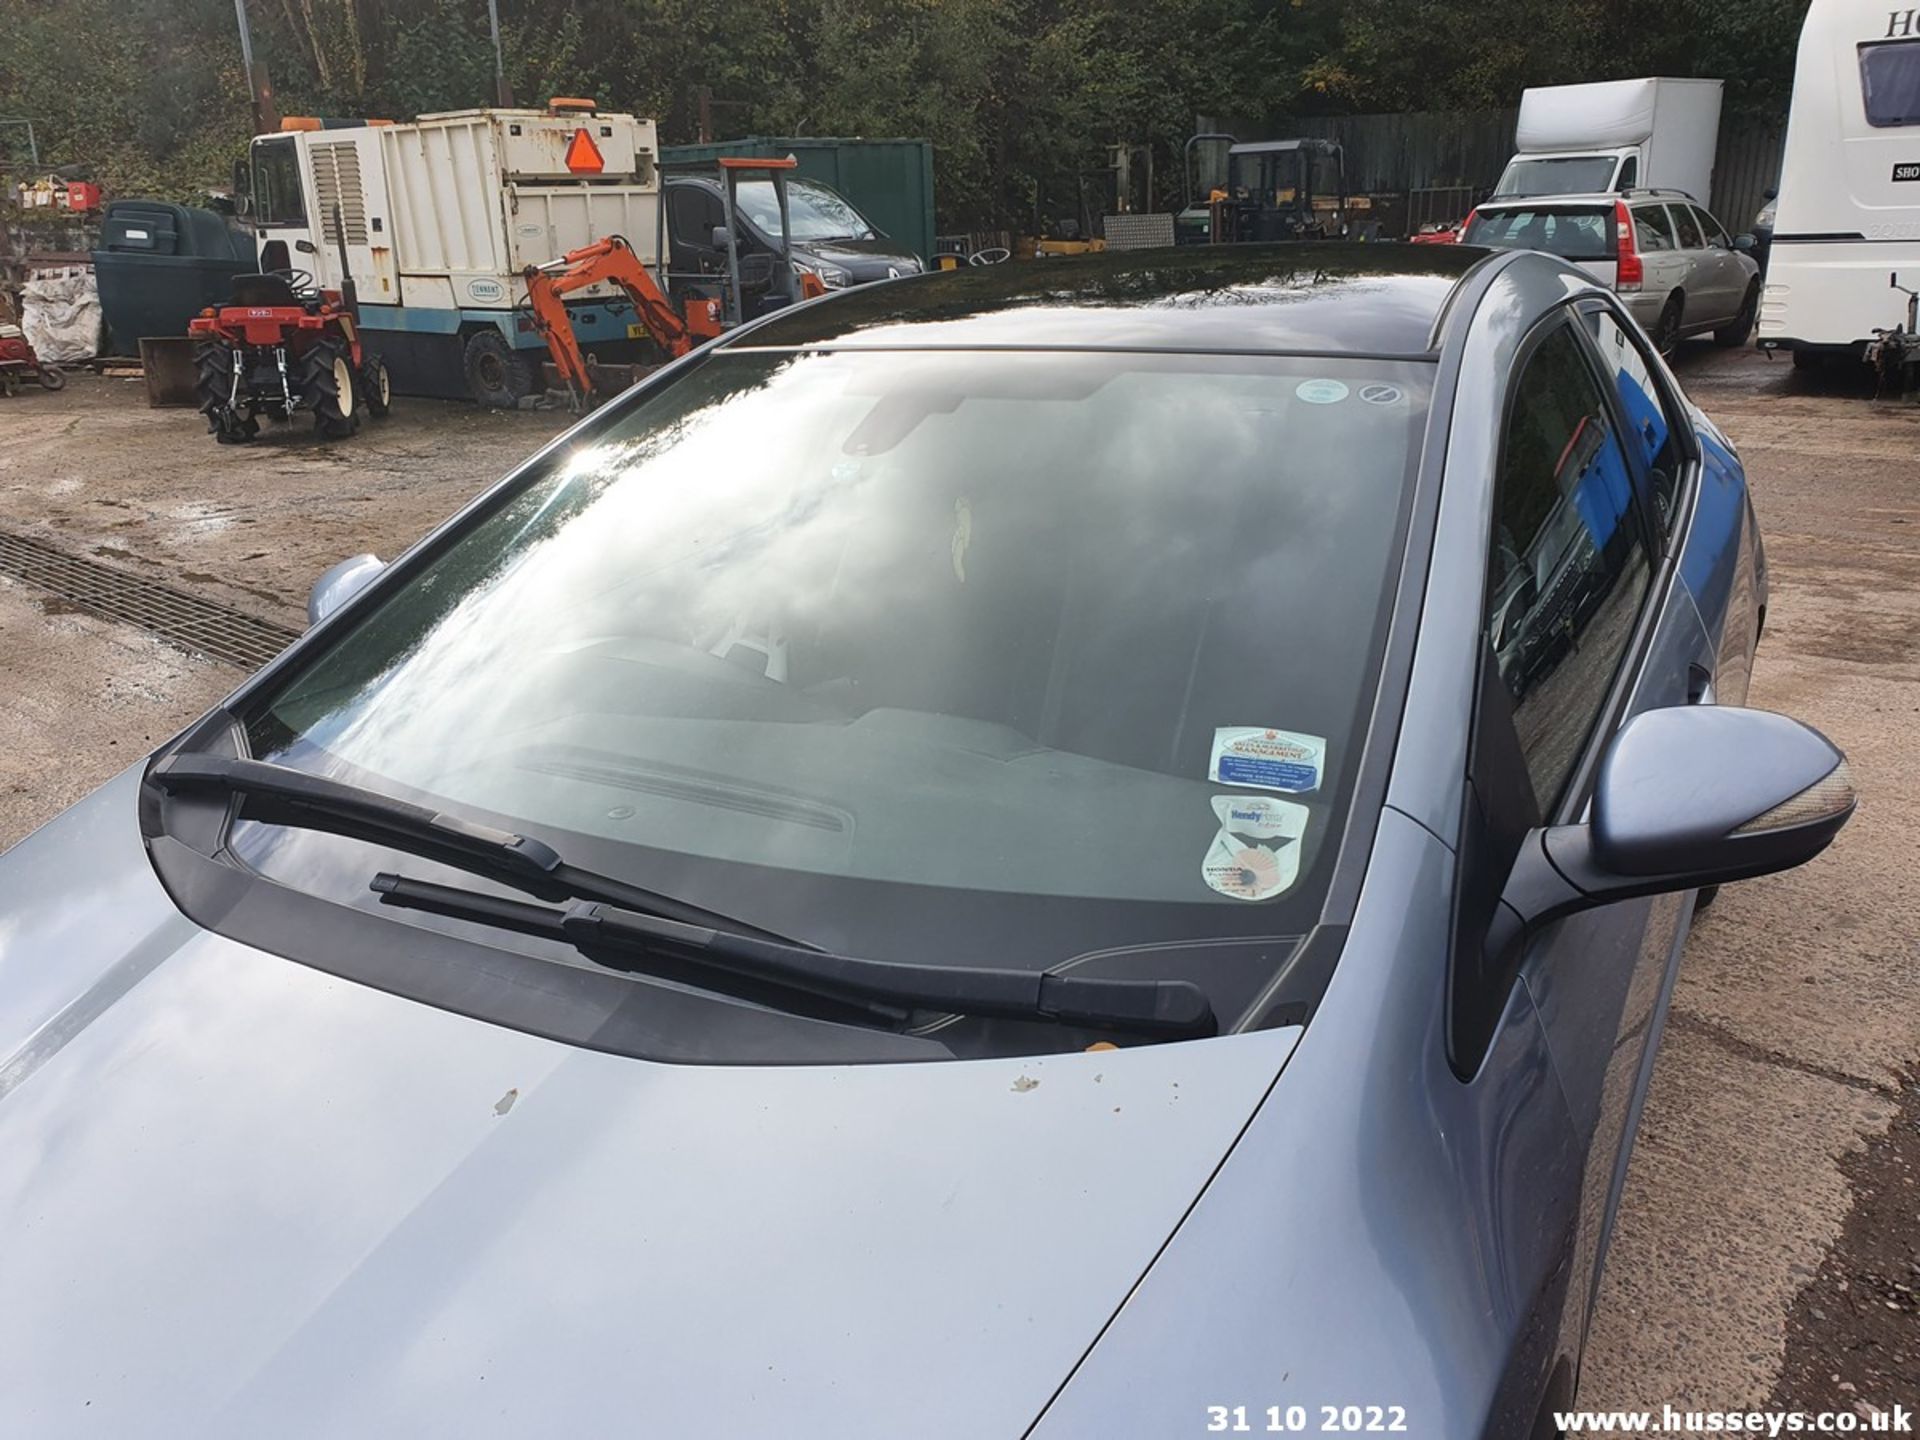 07/07 HONDA CIVIC ES I-CTDI - 2204cc 5dr Hatchback (Blue, 244k) - Image 18 of 32